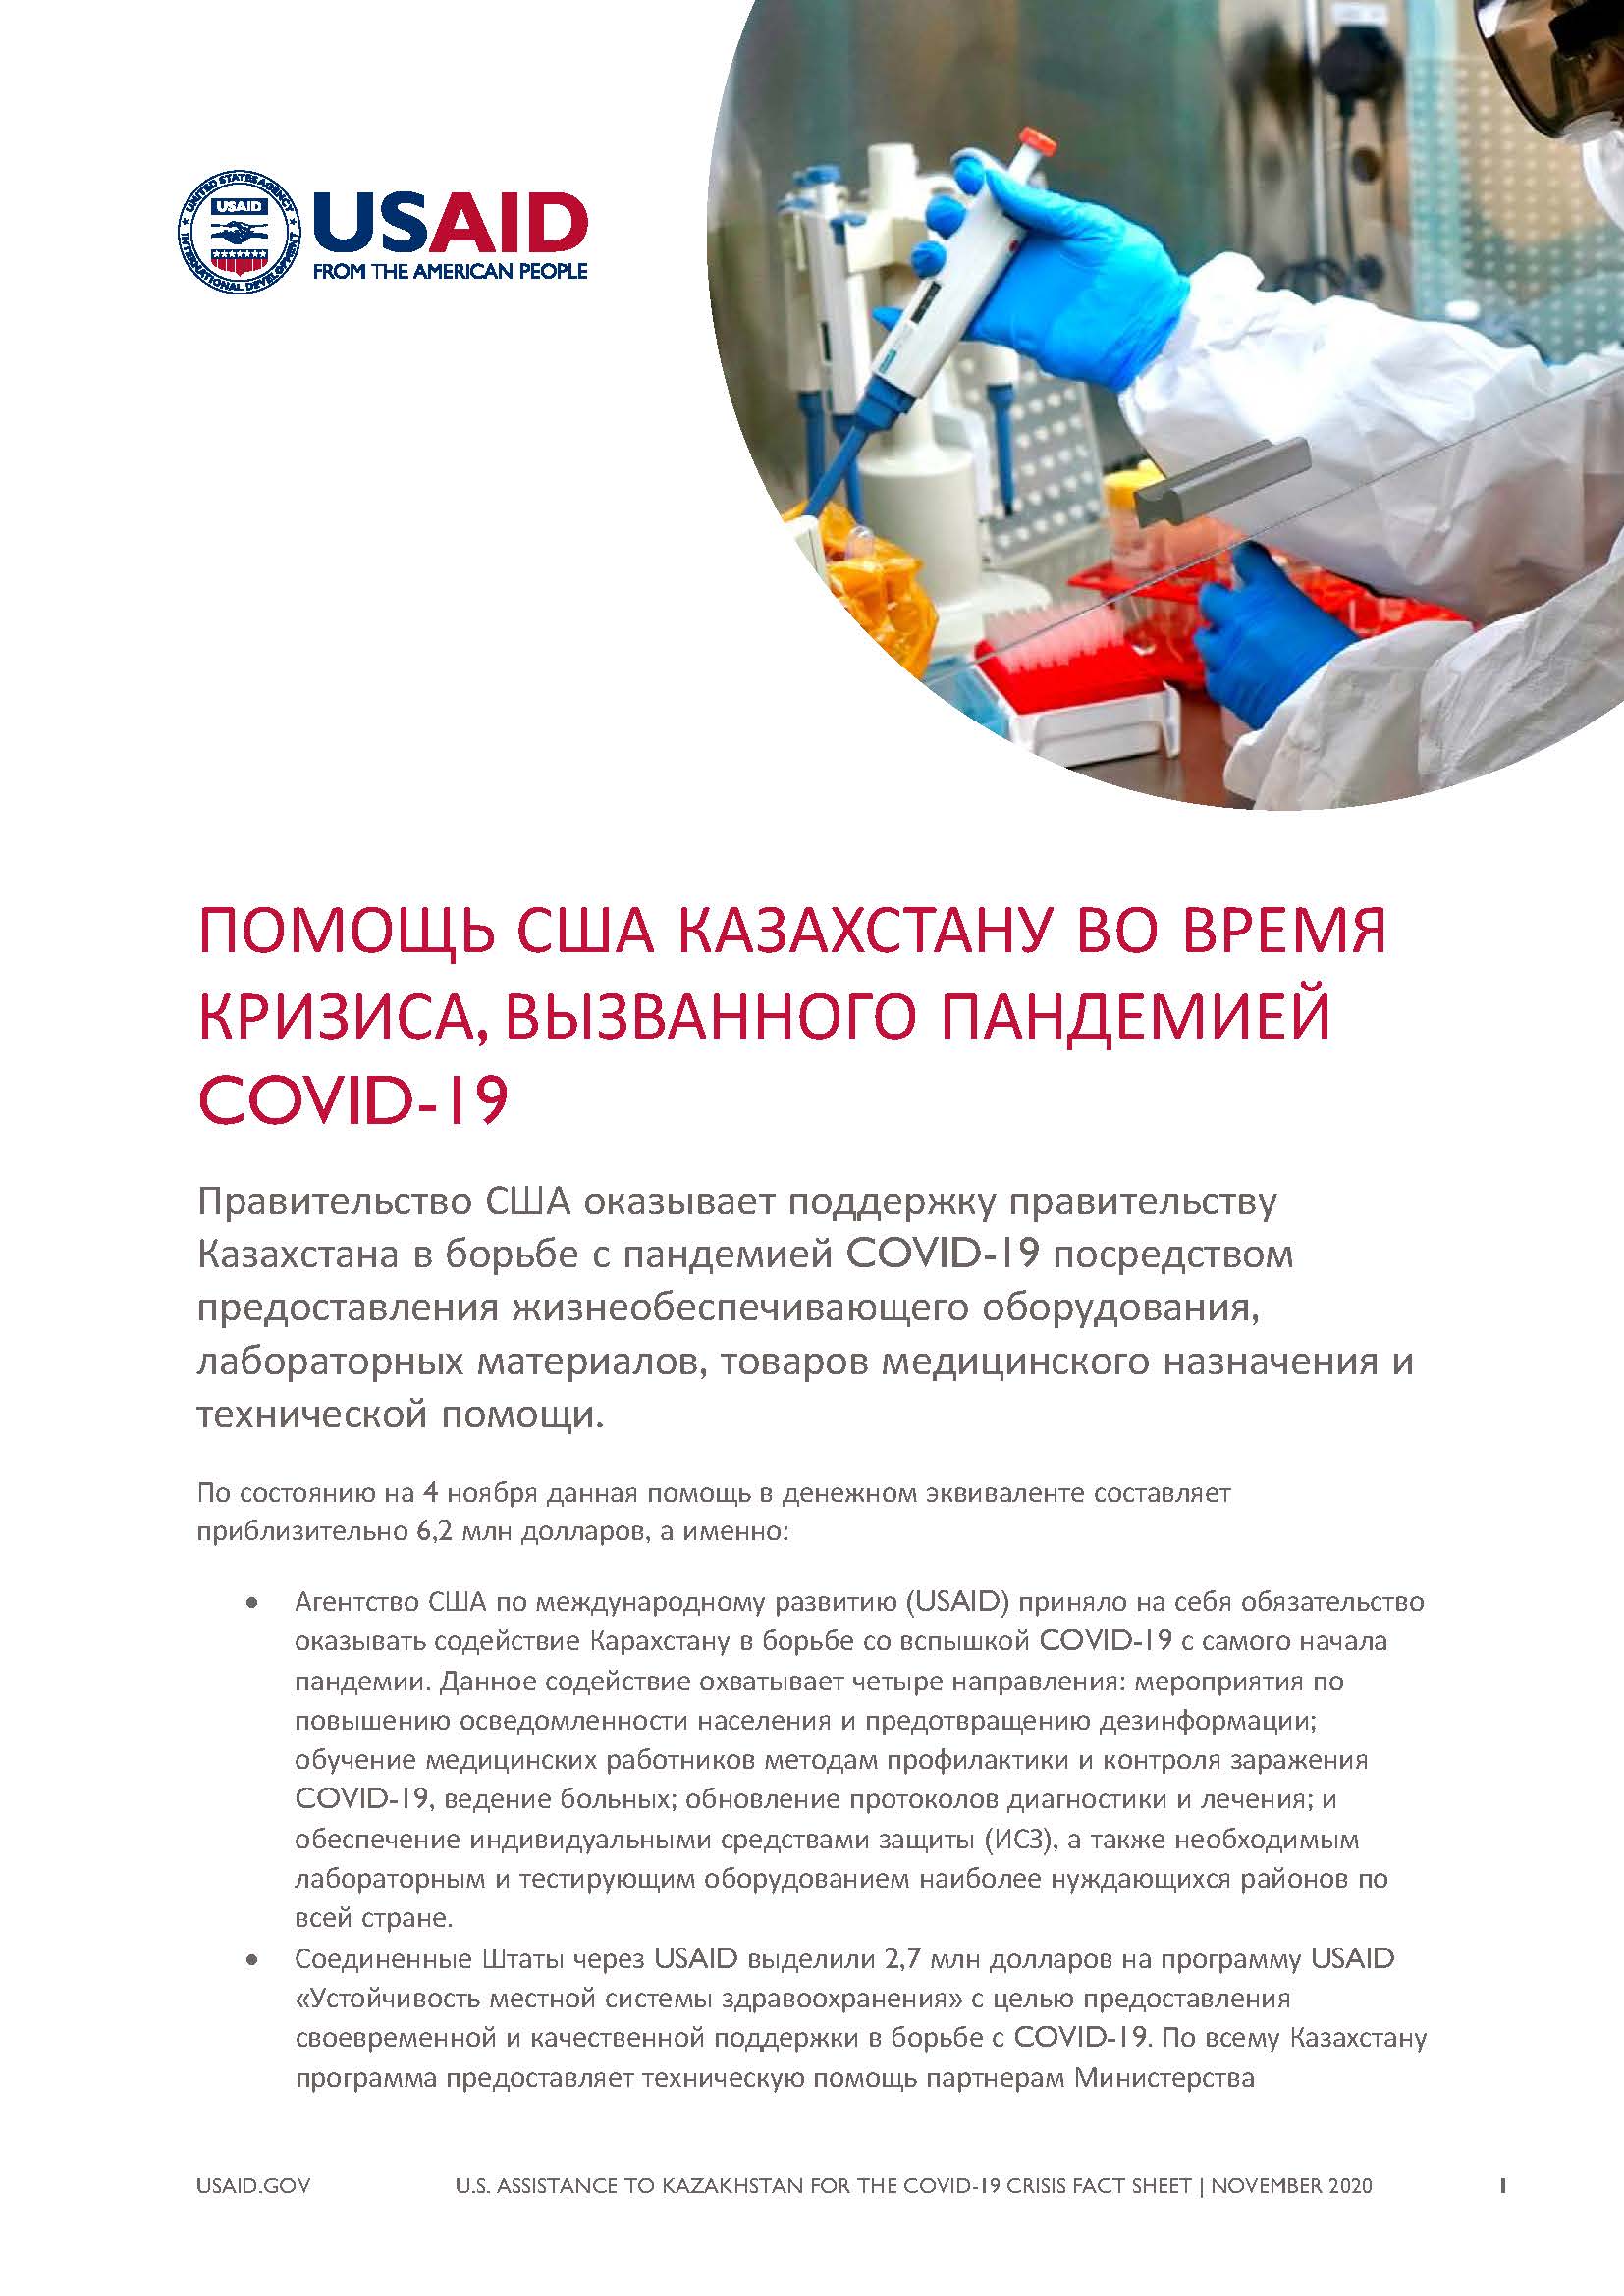 Помощь США Казахстану во время кризиса, вызванного пандемией COVID-19